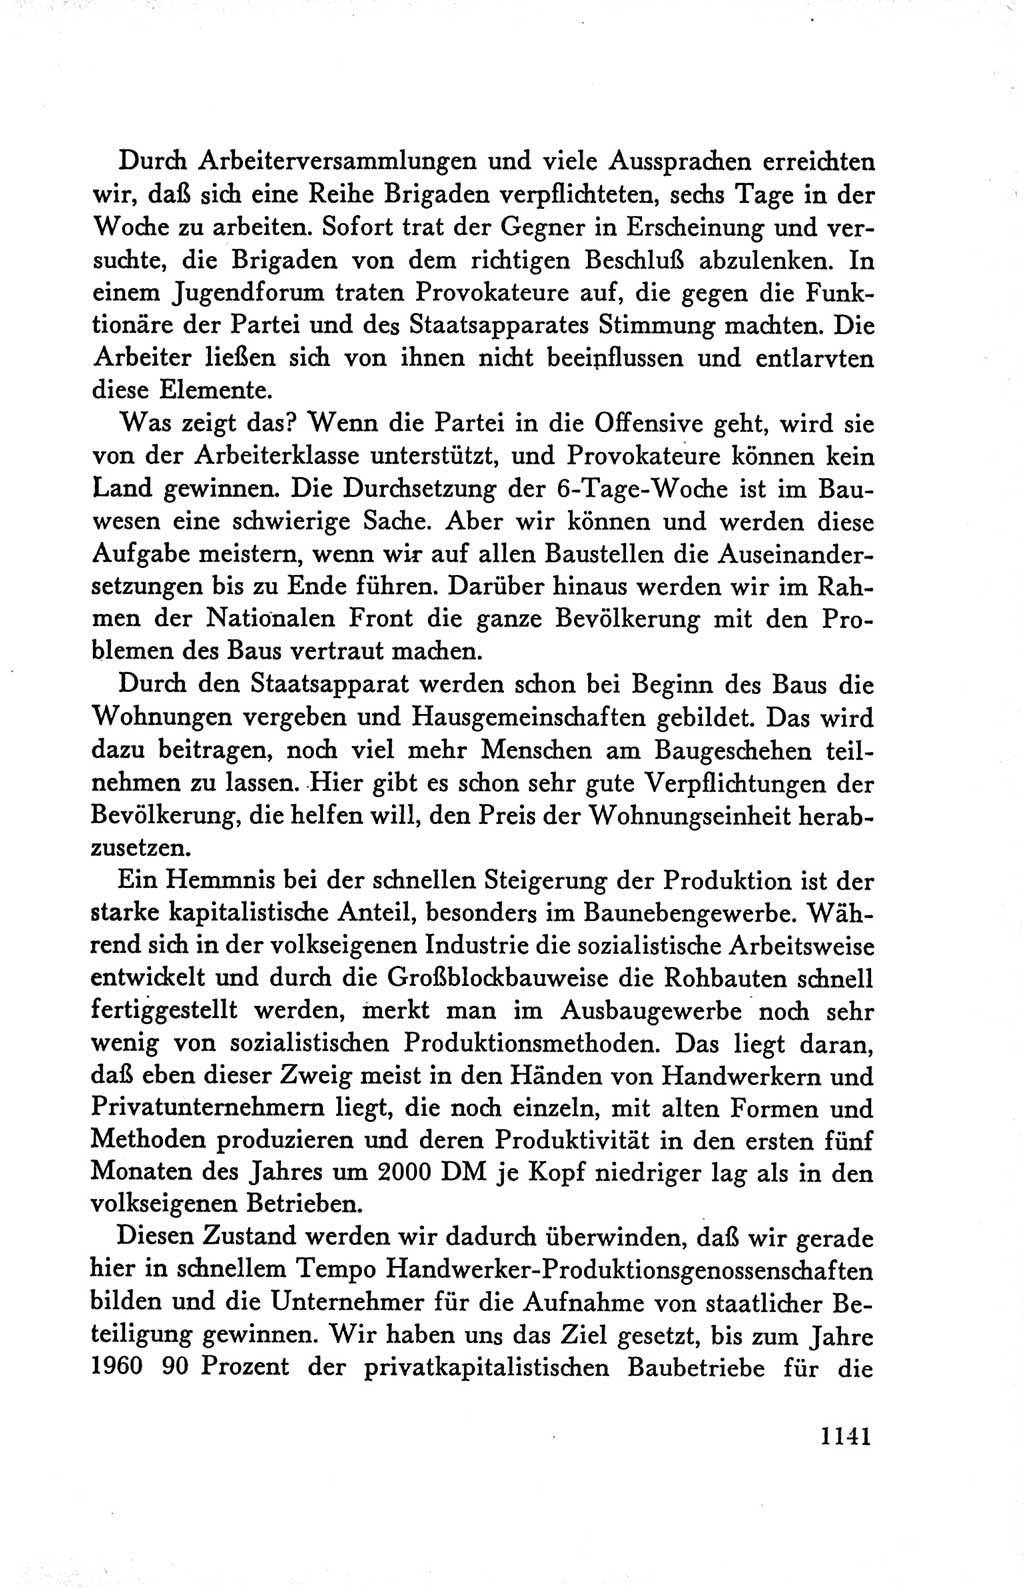 Protokoll der Verhandlungen des Ⅴ. Parteitages der Sozialistischen Einheitspartei Deutschlands (SED) [Deutsche Demokratische Republik (DDR)] 1958, Seite 1141